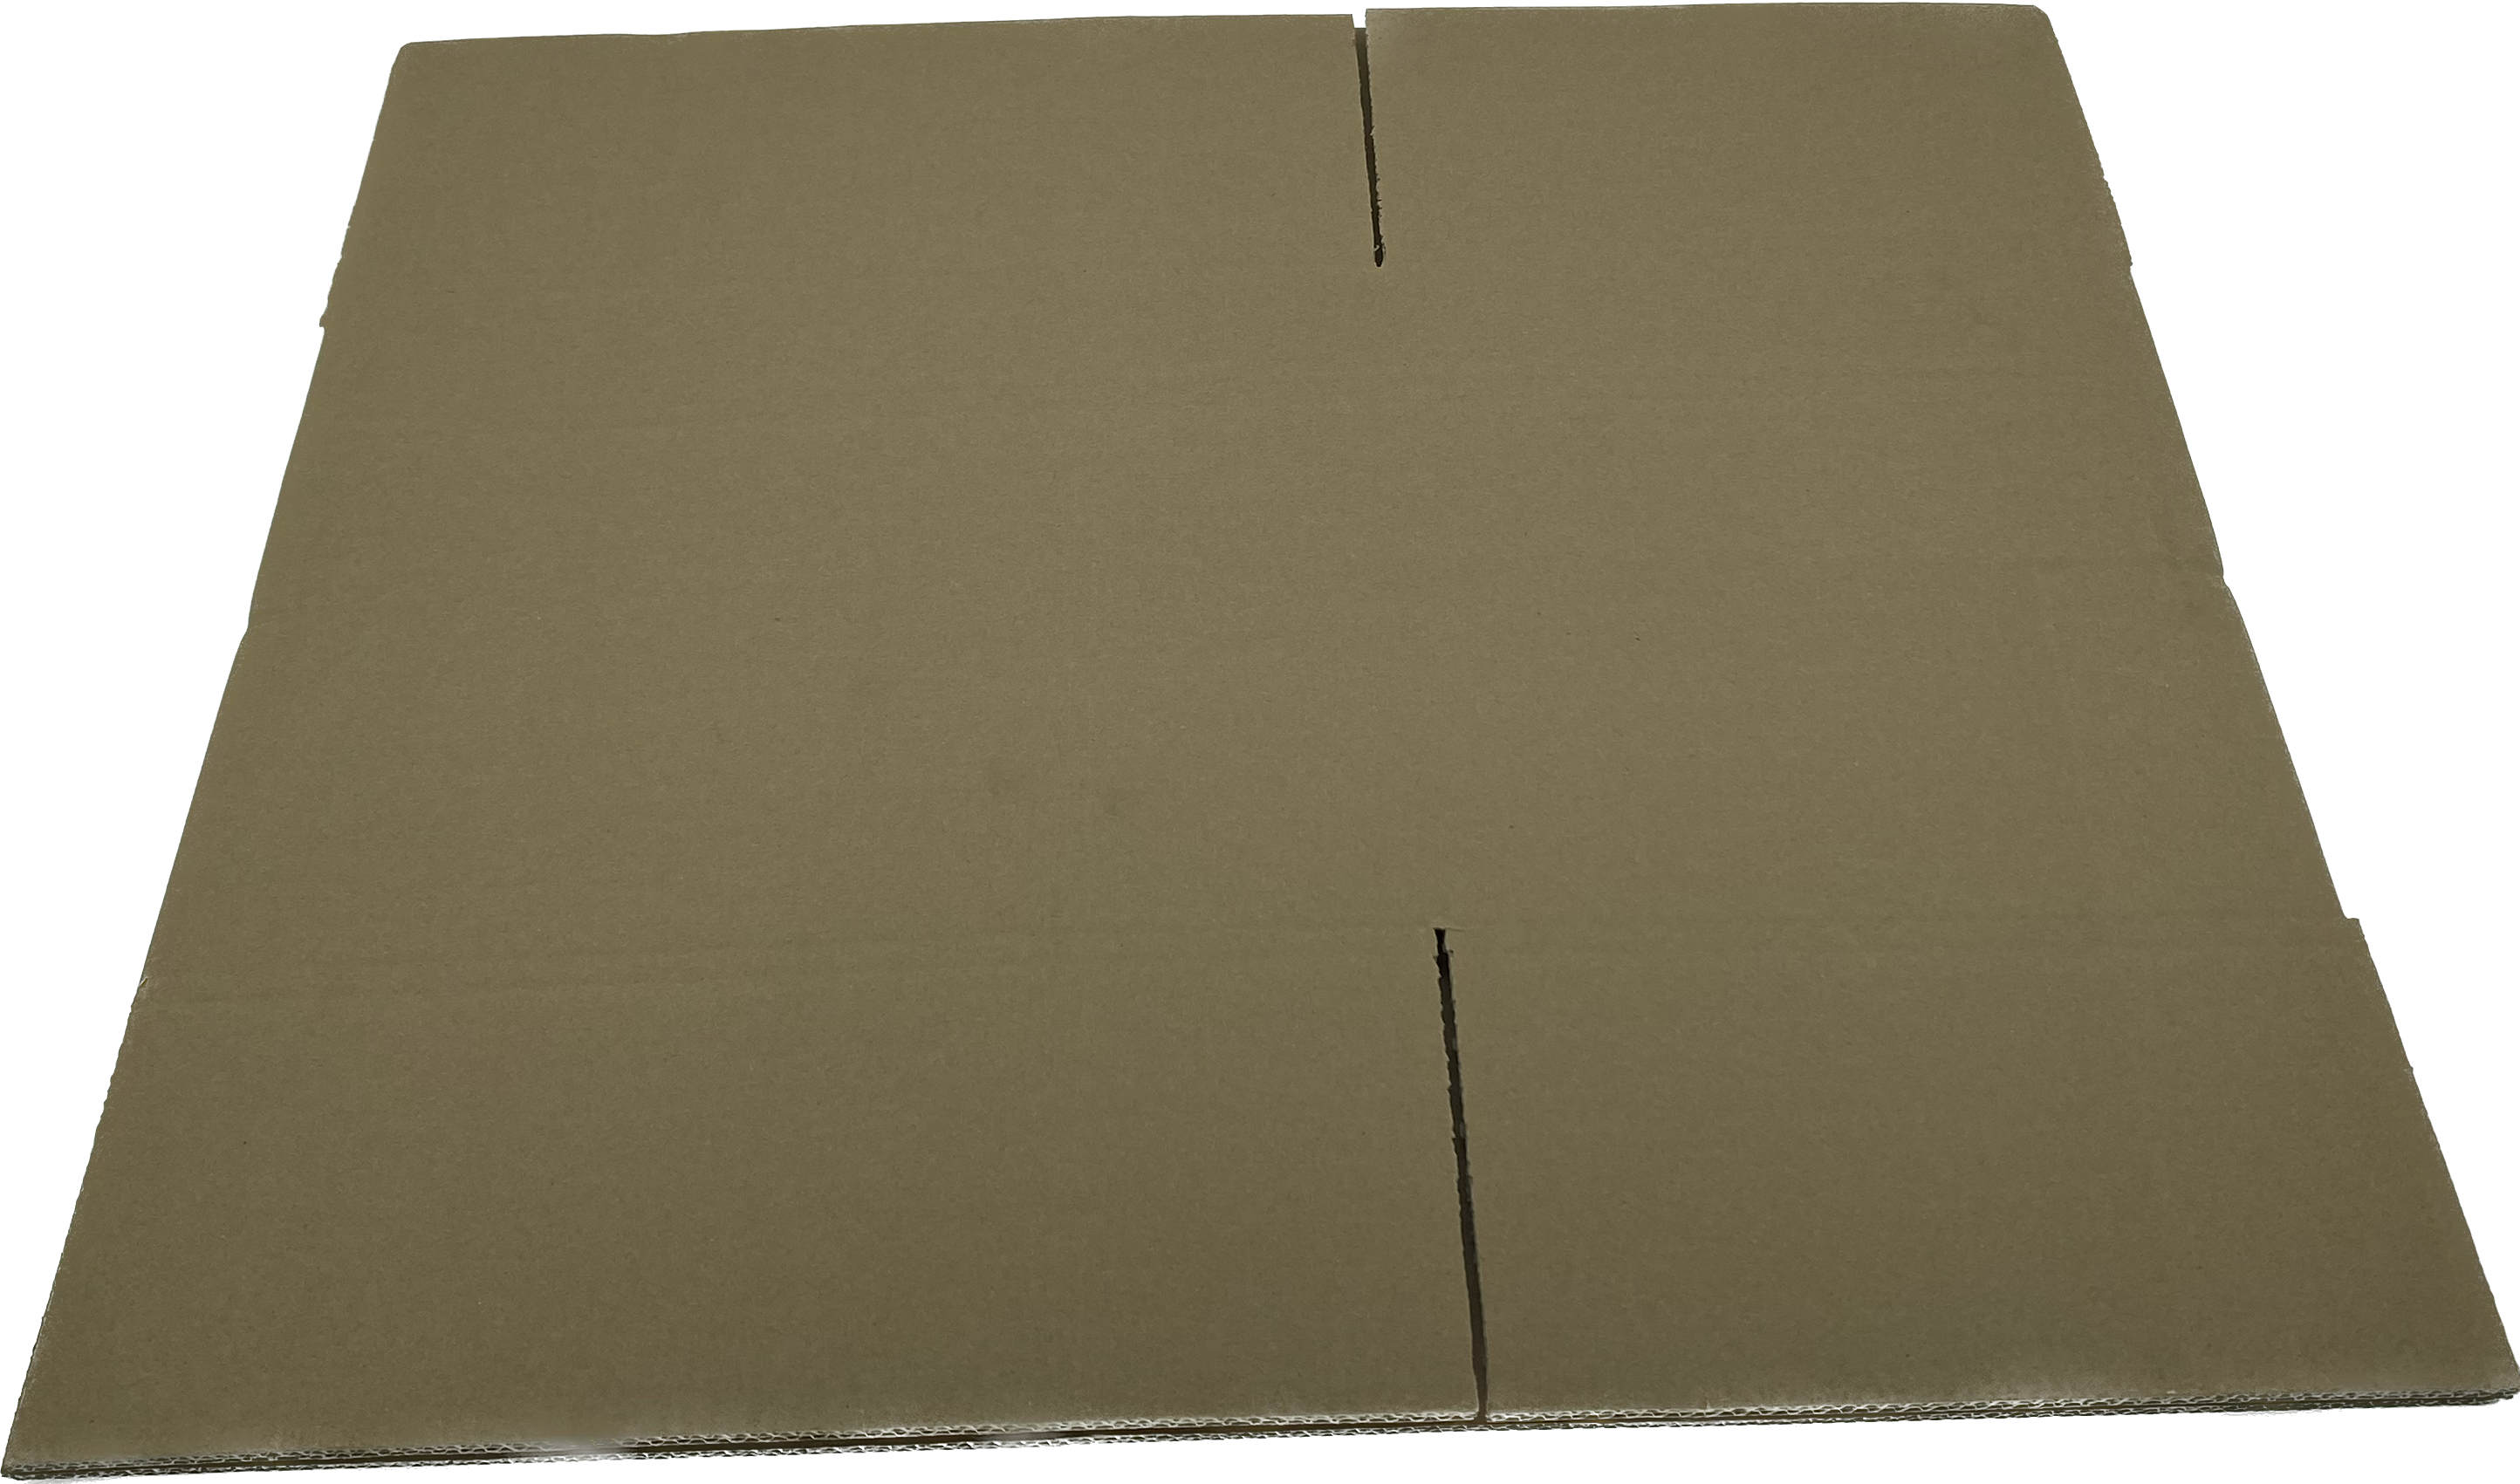 Wellpapp-Faltkarton, 430 x 310 x 315/250mm, 2.3BC, 0201